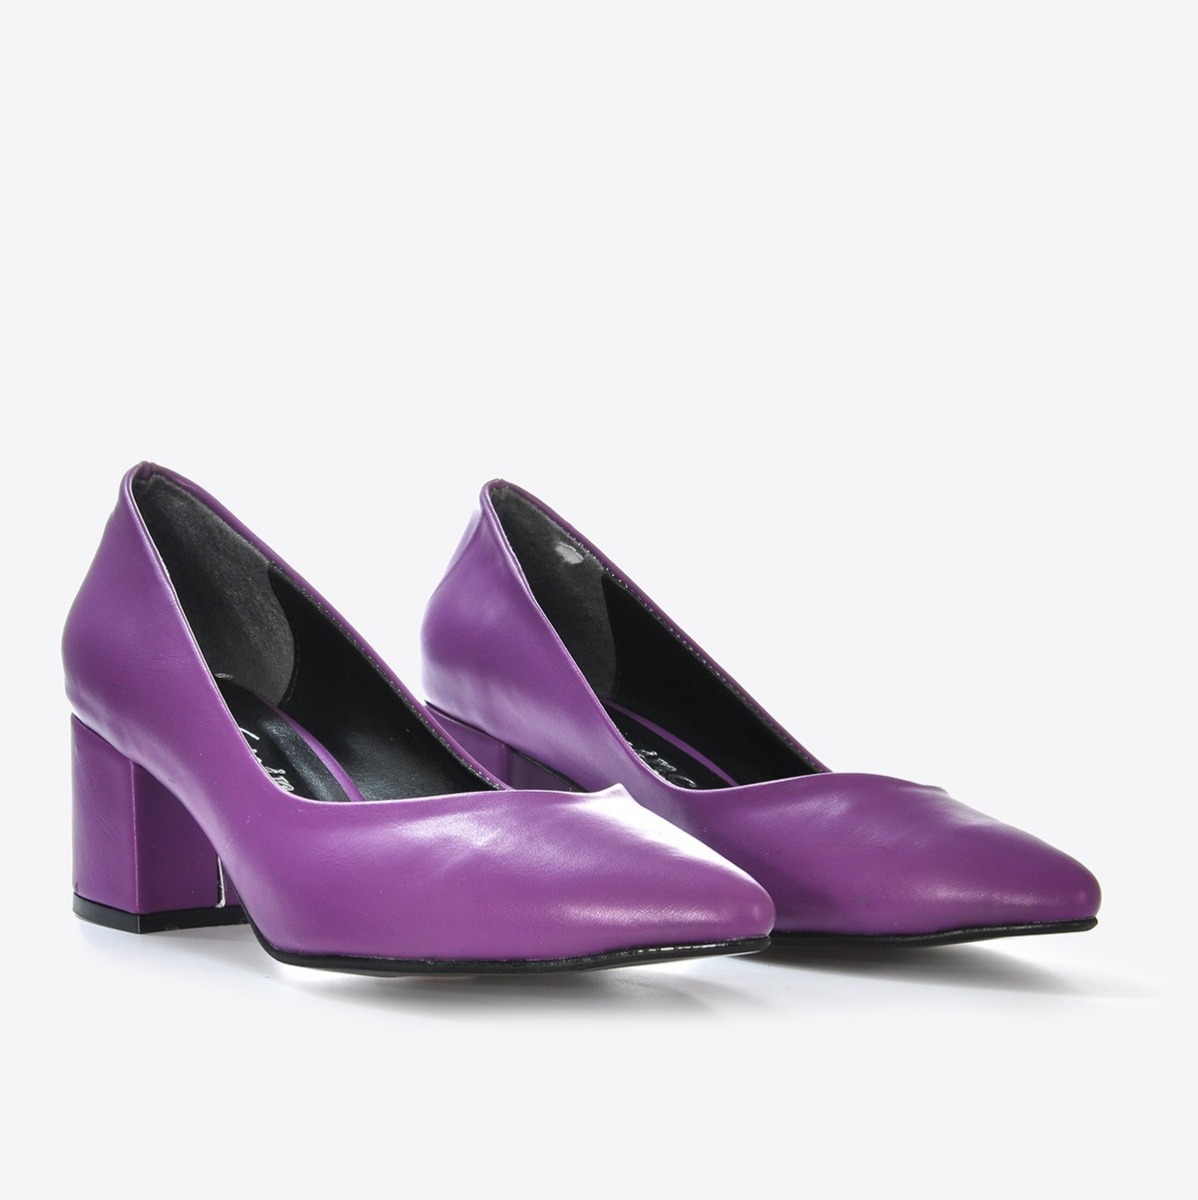 Flo Kadın Mor Klasik Topuklu Ayakkabı VZN21-040Y. 4